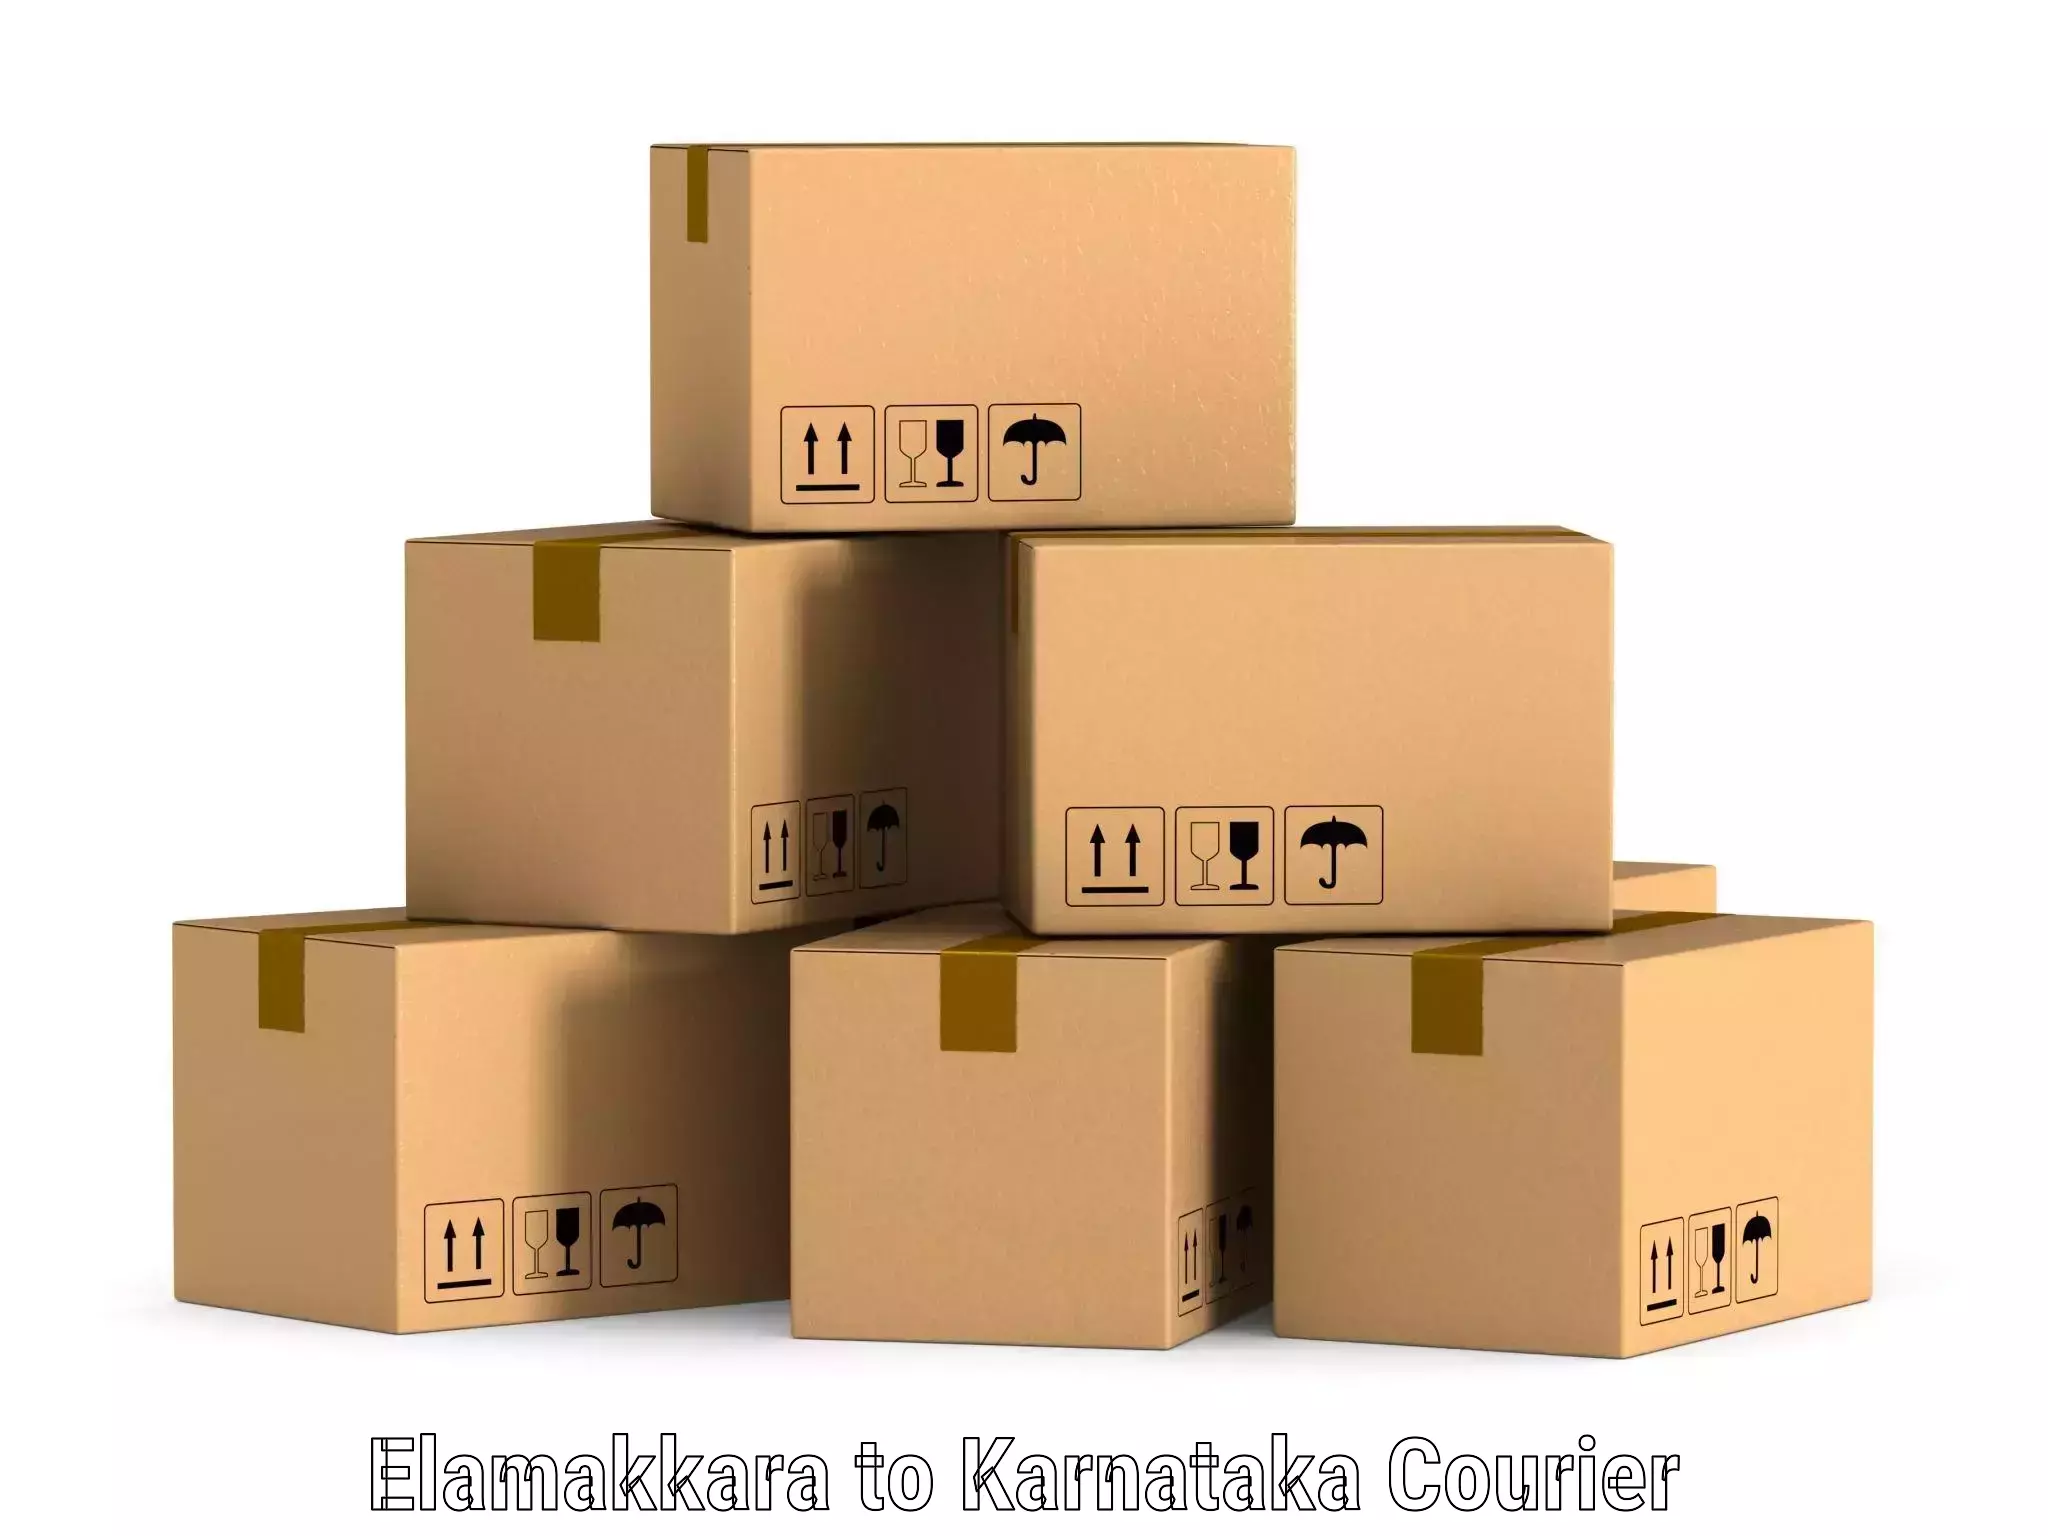 Cash on delivery service Elamakkara to Kushalnagar